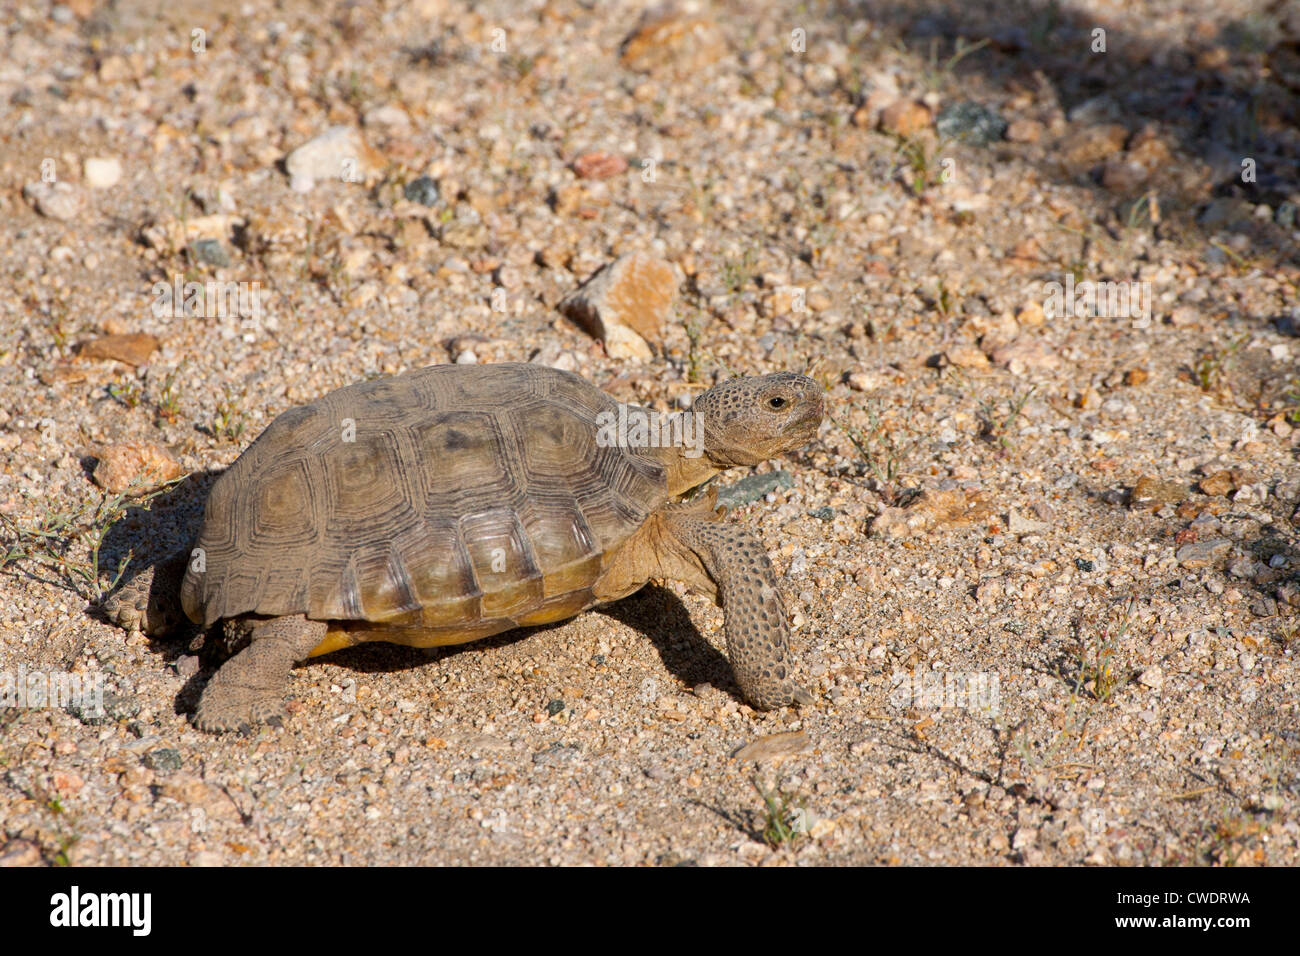 Agassiz Wüste Schildkröte Gopherus Agassizii Mohave Wüste zu bewahren, Kalifornien, Vereinigte Staaten 15 können Erwachsene Eischwiele Stockfoto